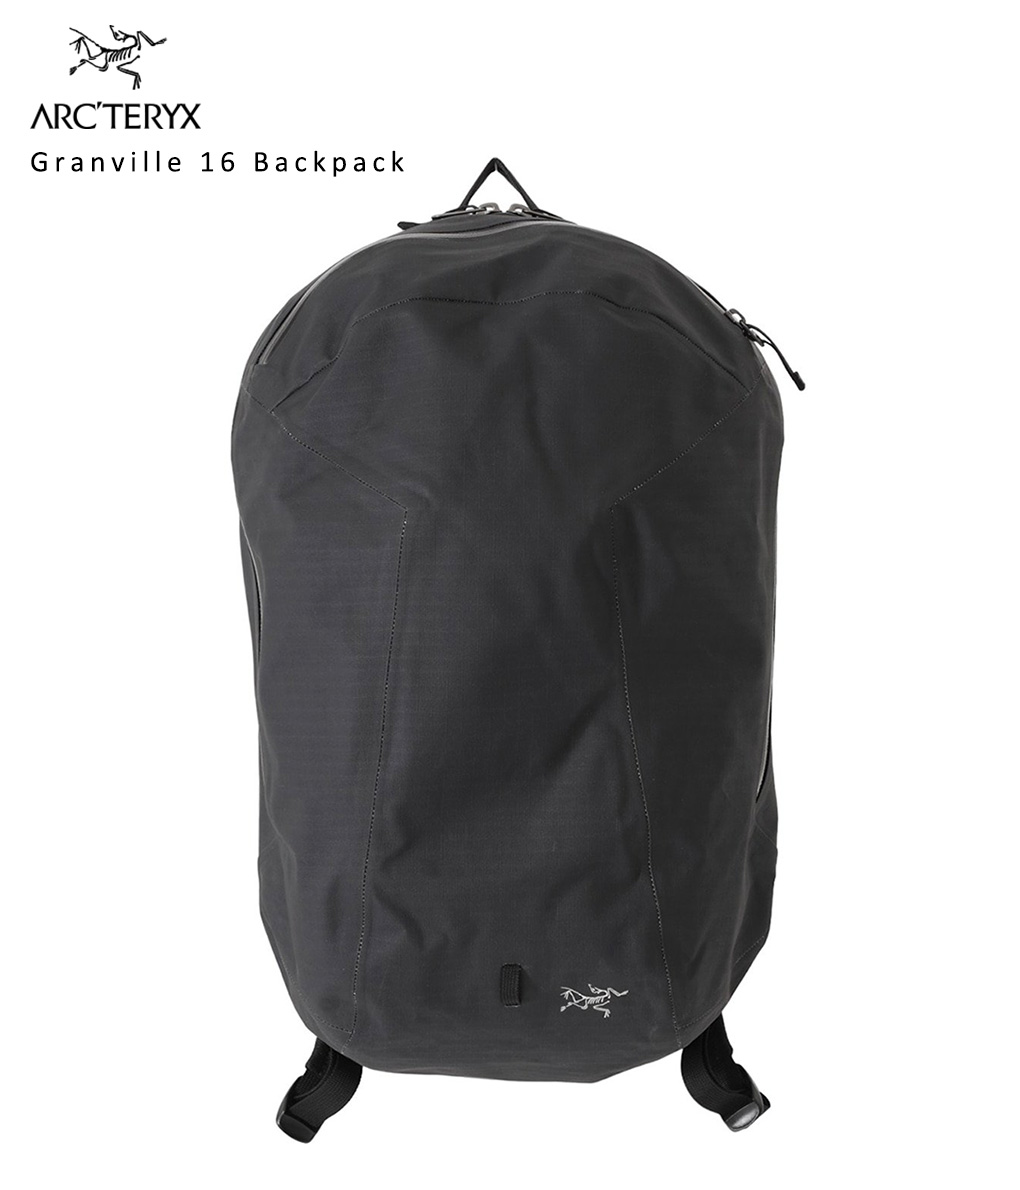 【送料無料】ARC’TERYX / アークテリクス : Granville 16 Backpack : グランヴィル シンプル アウトドア 鞄  バックパック バック リュック メンズ ブラック ジッパーポケット 防水性 ナイロン 旅行 アクティビティ 登山 オールシーズン :